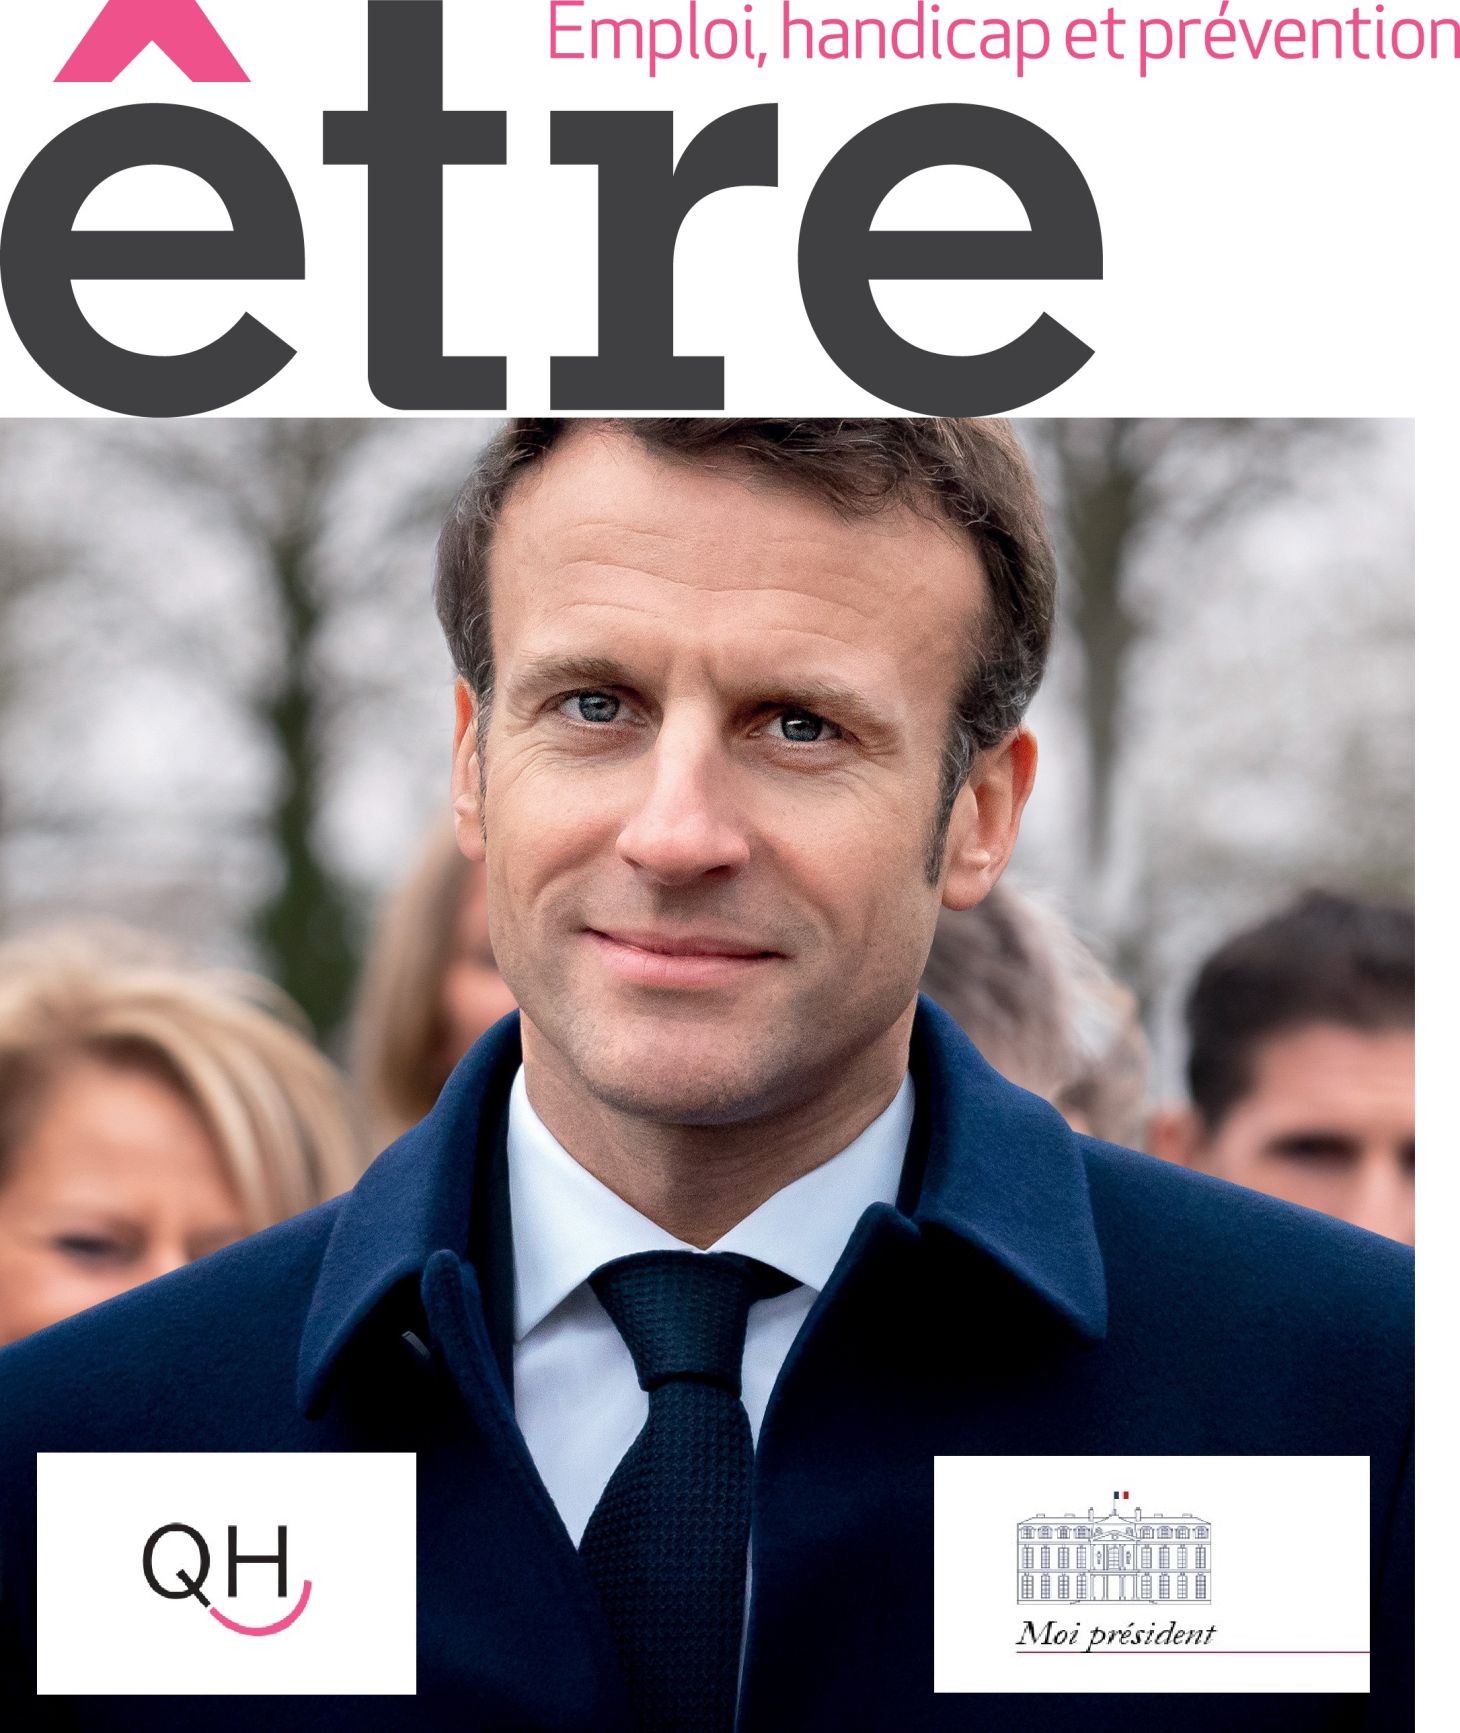 Photo officielle de campagne d'Emmanuel Macron avec les logos Être, QH et Moi président